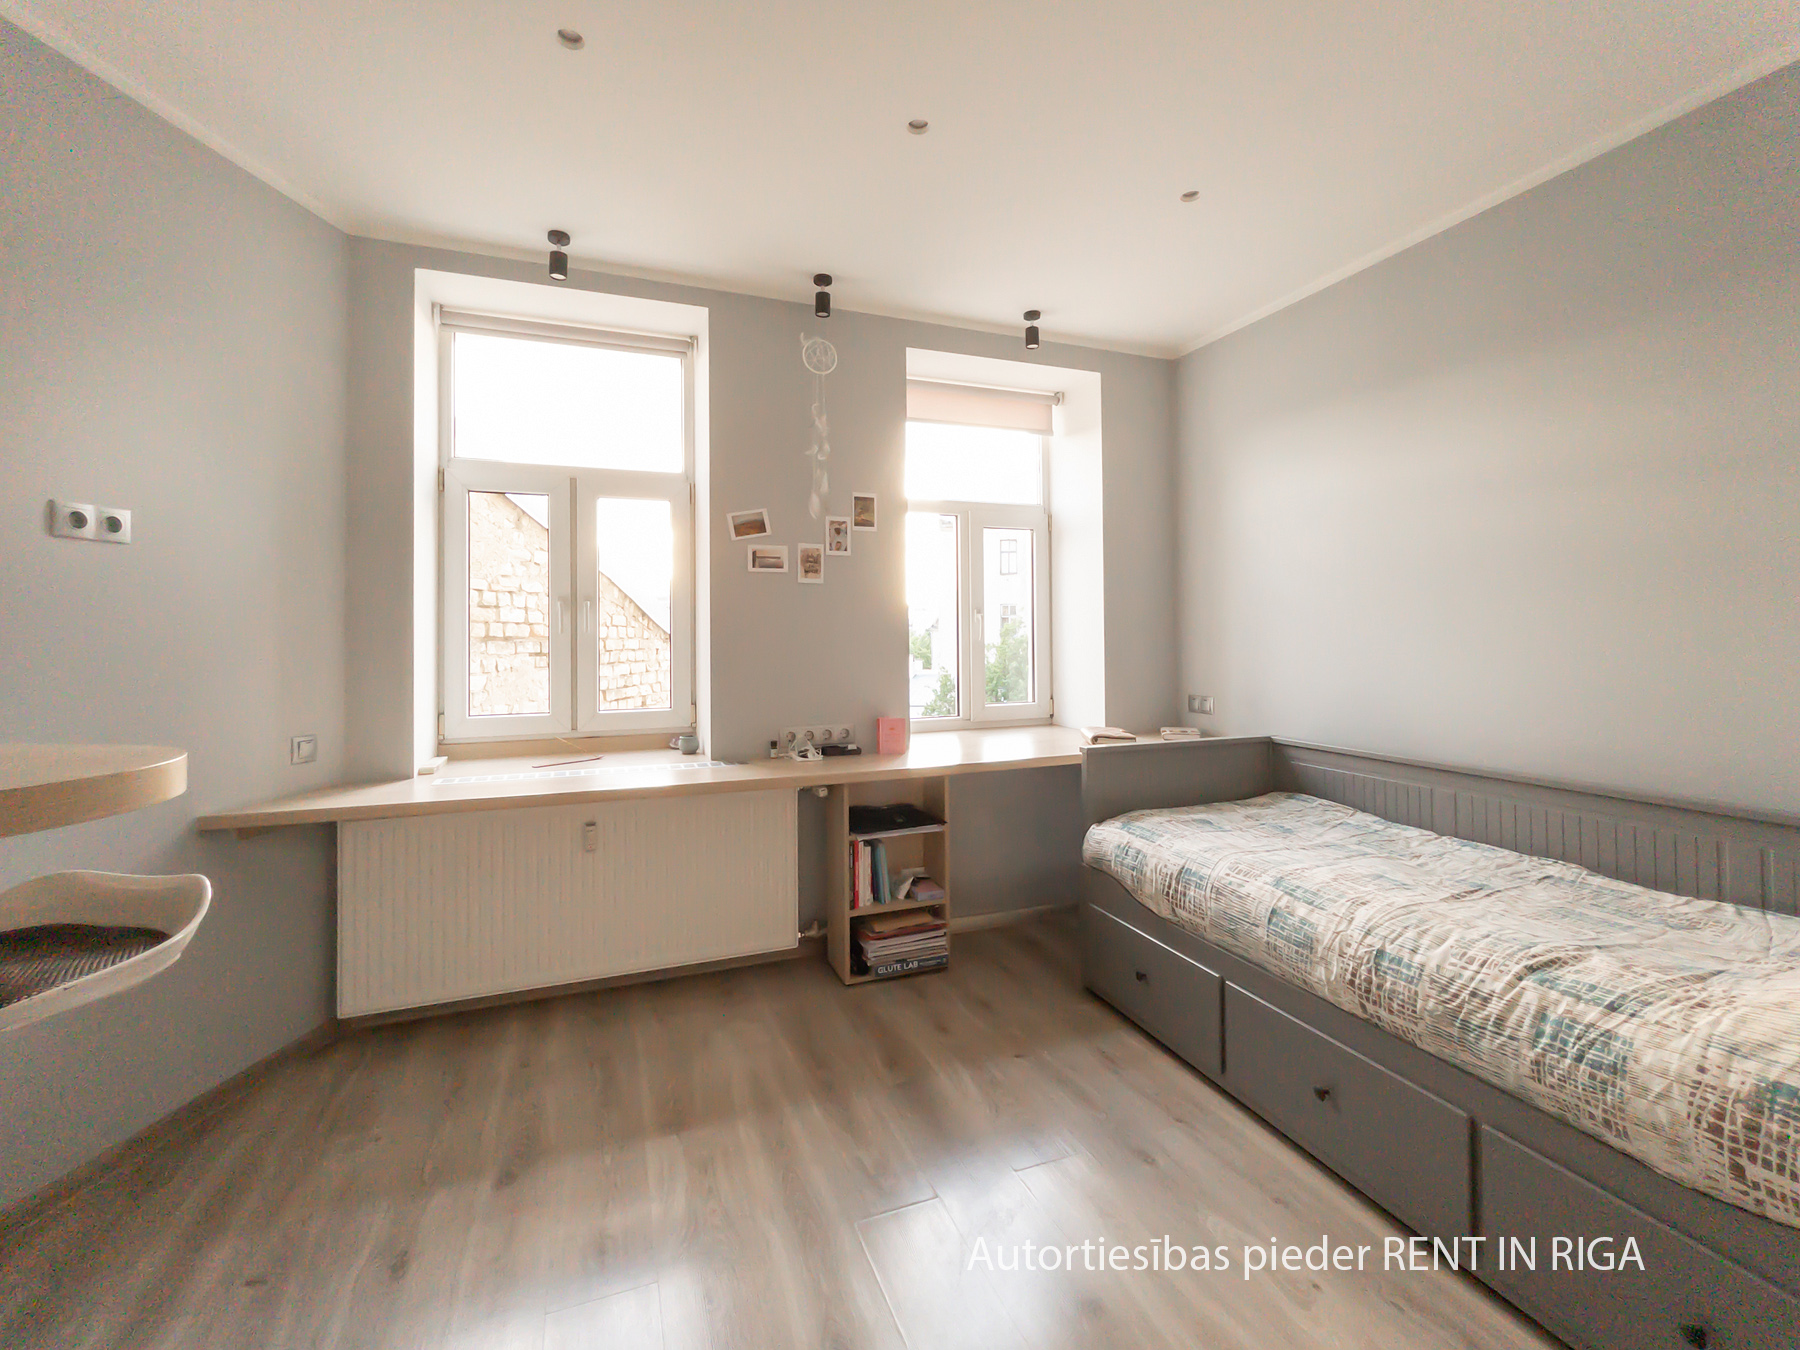 Apartment for rent, Krišjāņa Barona street 129 - Image 1